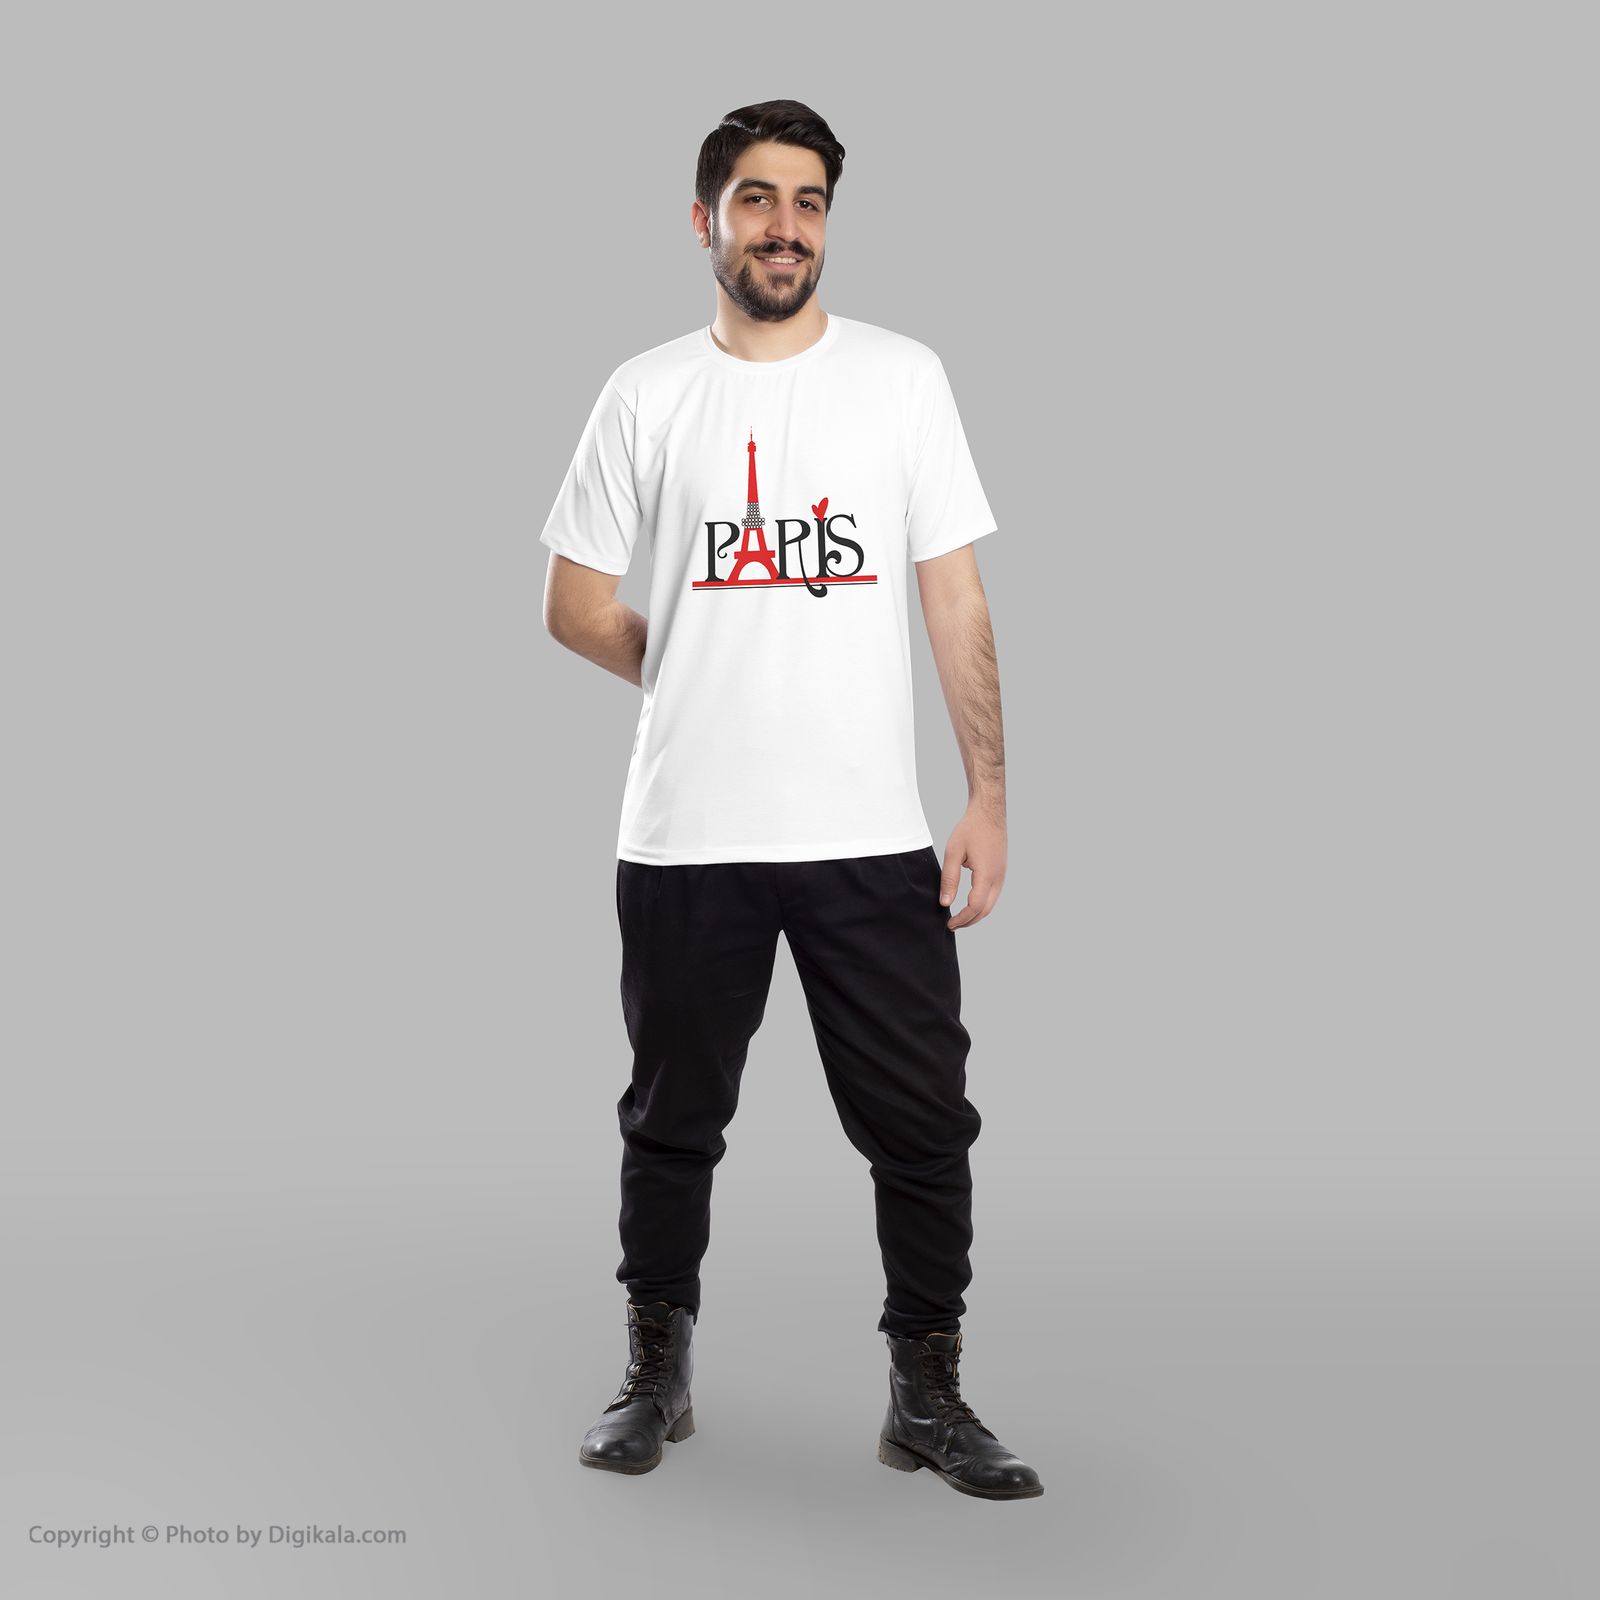 تی شرت مردانه به رسم طرح پاریس کد 3376 -  - 5